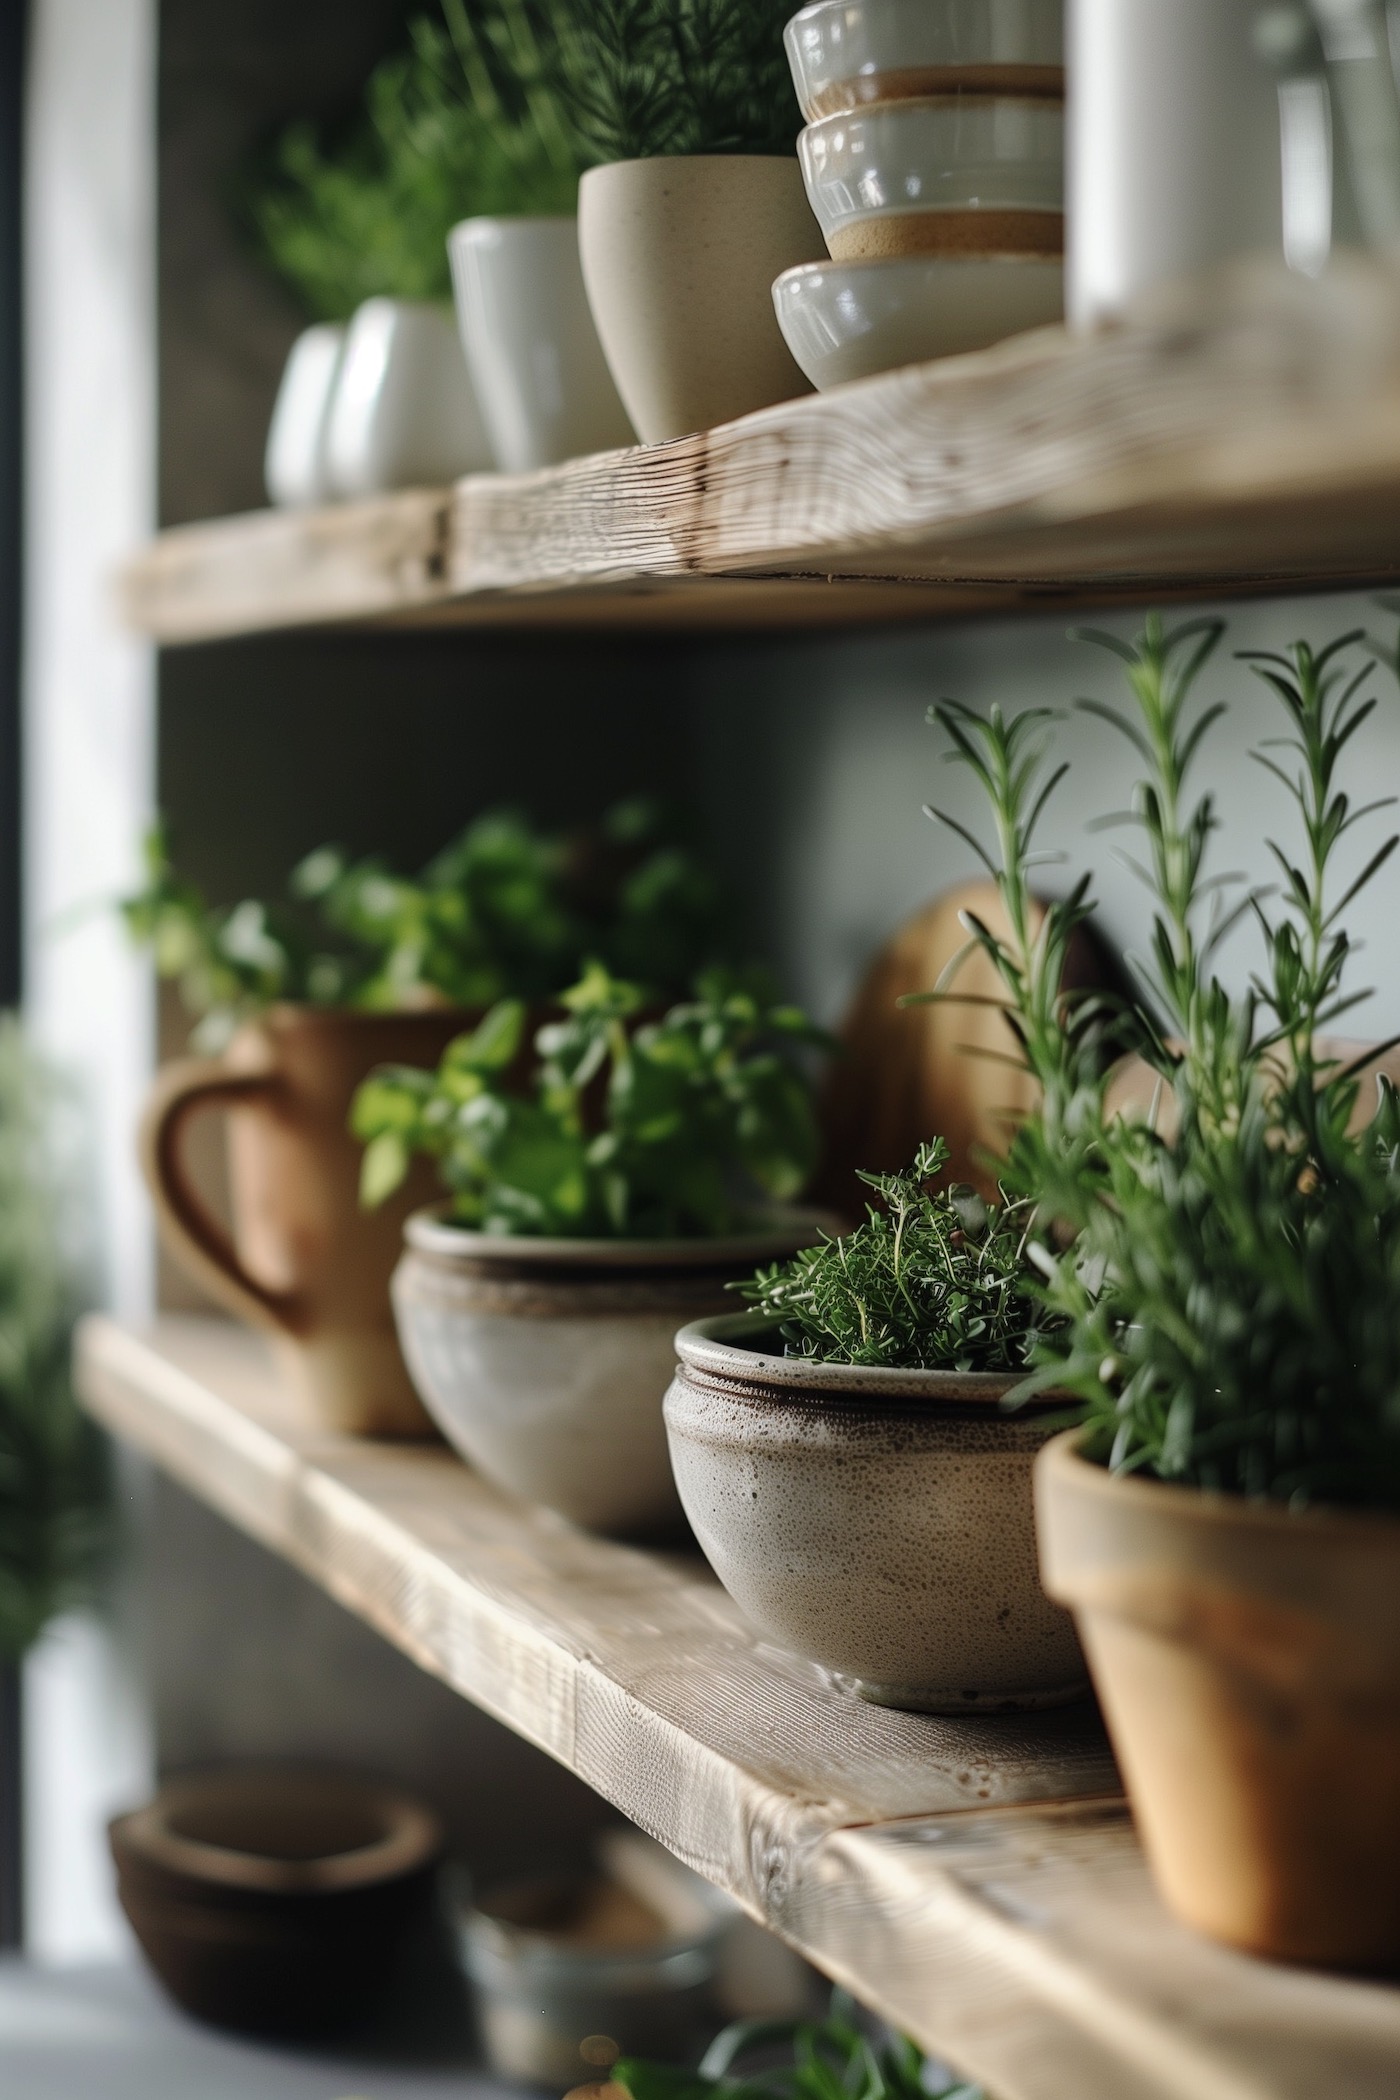 décorer cuisine plantes aromatiques étagères bois - blog déco